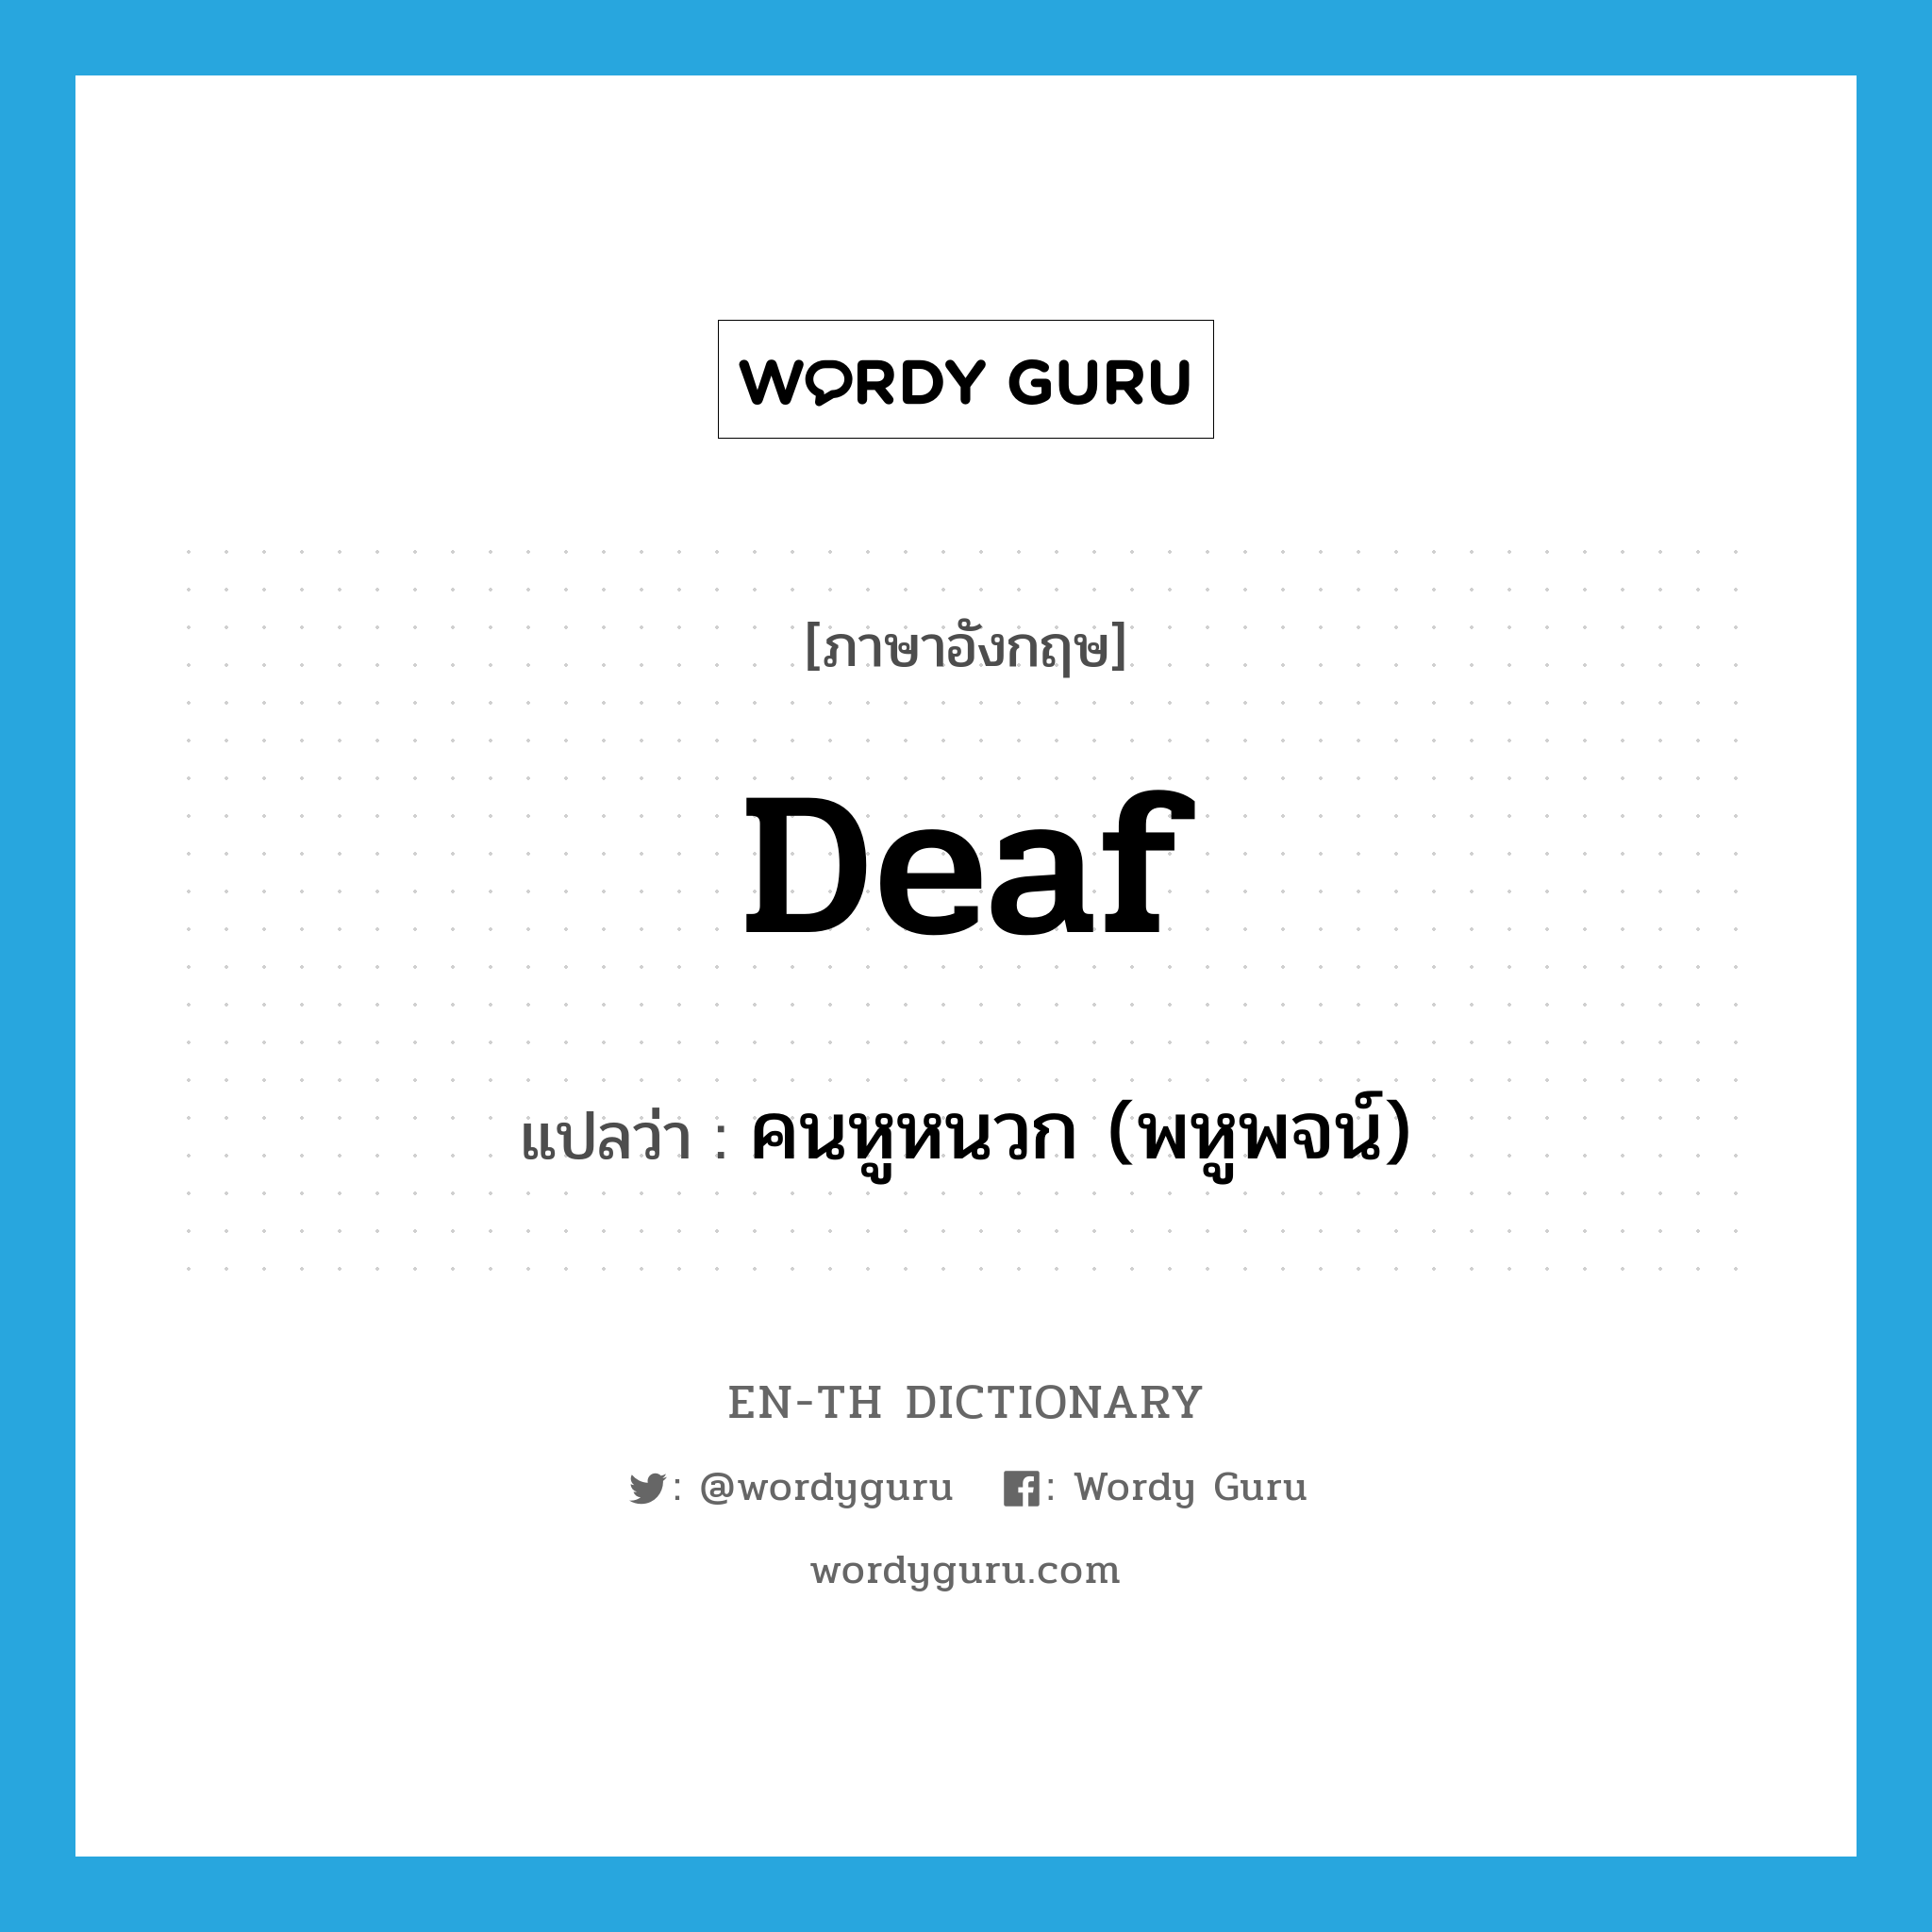 คนหูหนวก (พหูพจน์) ภาษาอังกฤษ?, คำศัพท์ภาษาอังกฤษ คนหูหนวก (พหูพจน์) แปลว่า deaf ประเภท N หมวด N